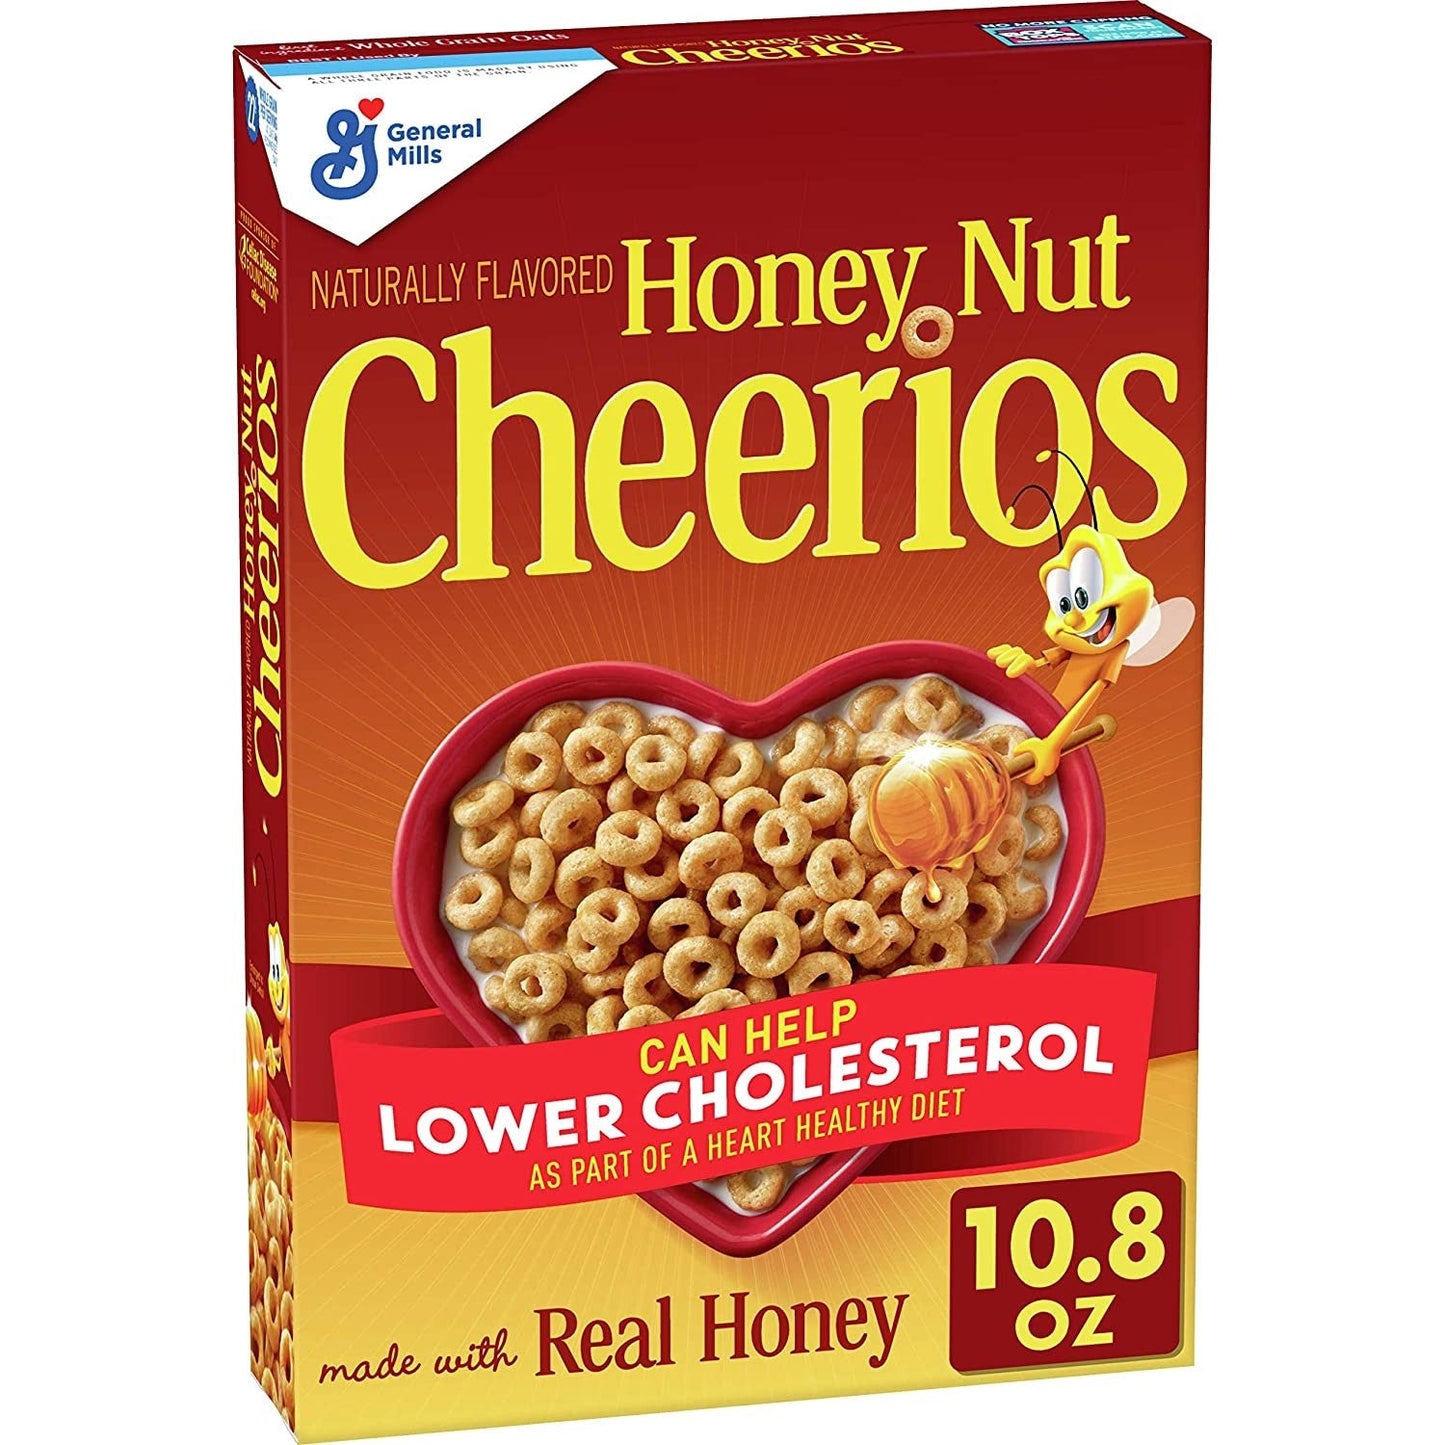 Honey Nut Cheerios 10.8oz